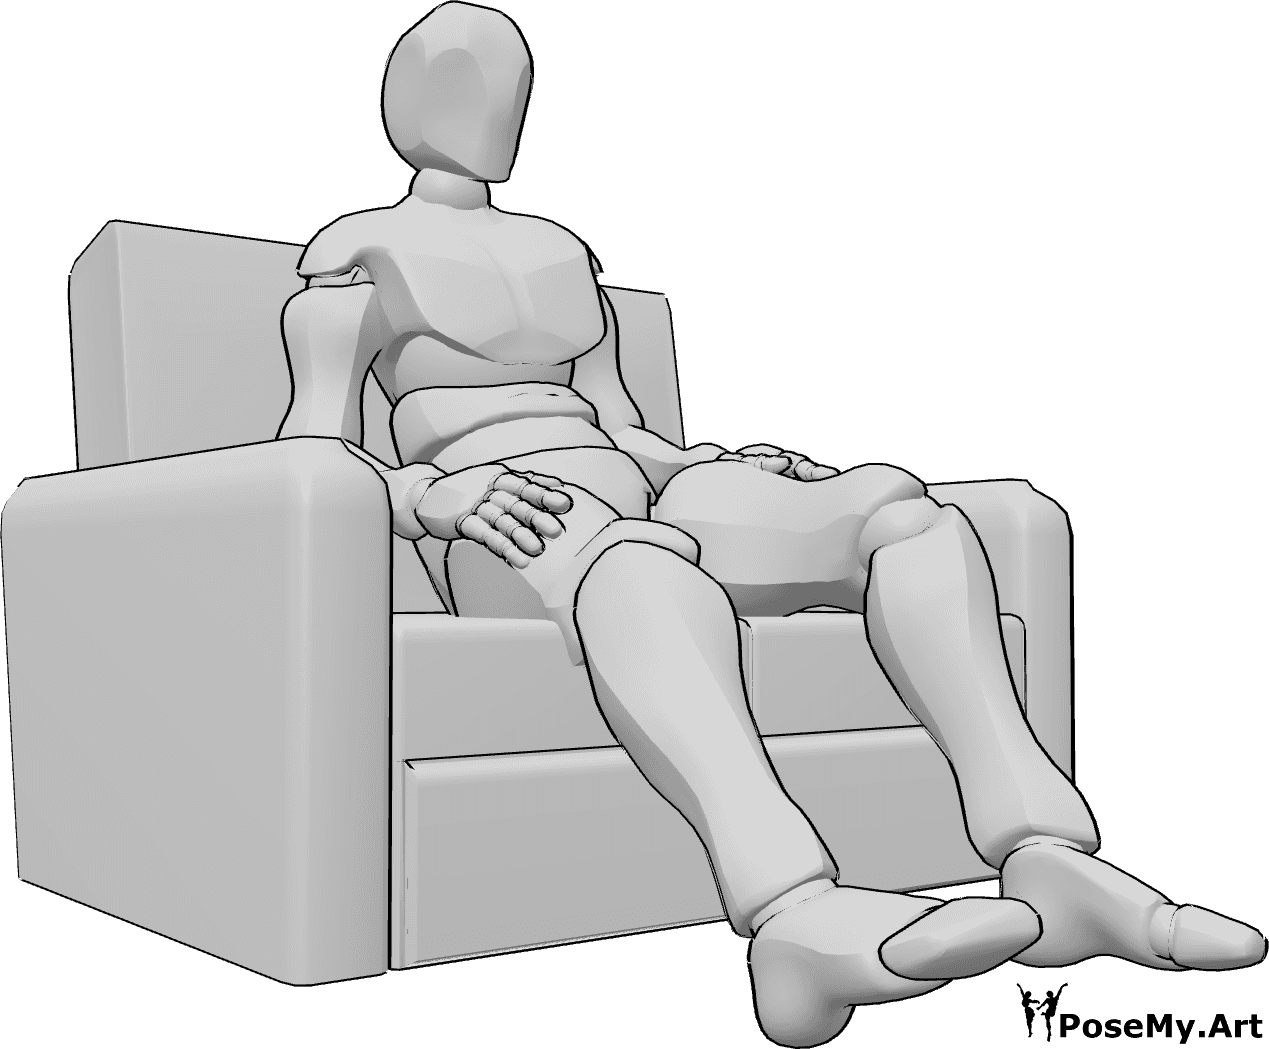 Referência de poses- Postura sentada confortável - O homem está sentado confortavelmente no sofá, com as duas mãos nos bolsos